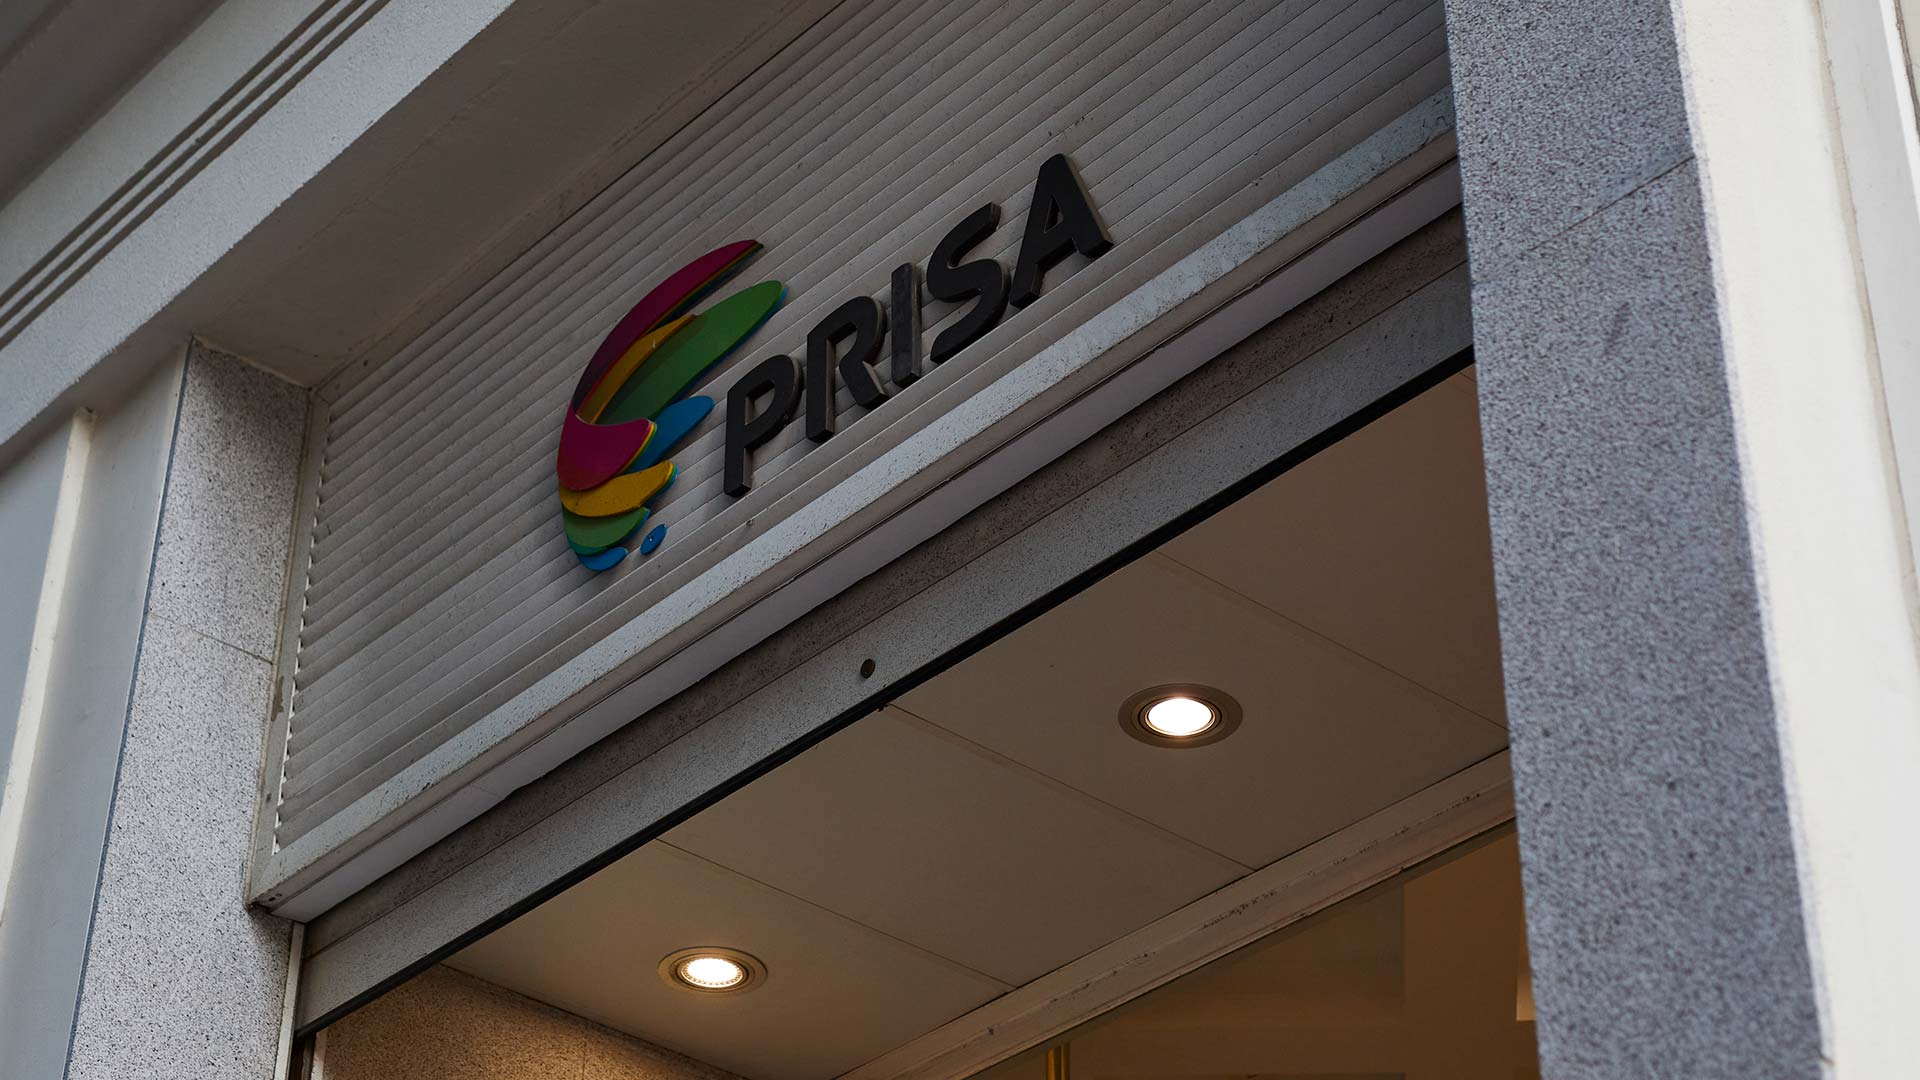 El nuevo socio de Prisa fuerza la salida del último apoyo de los Polanco y el Santander